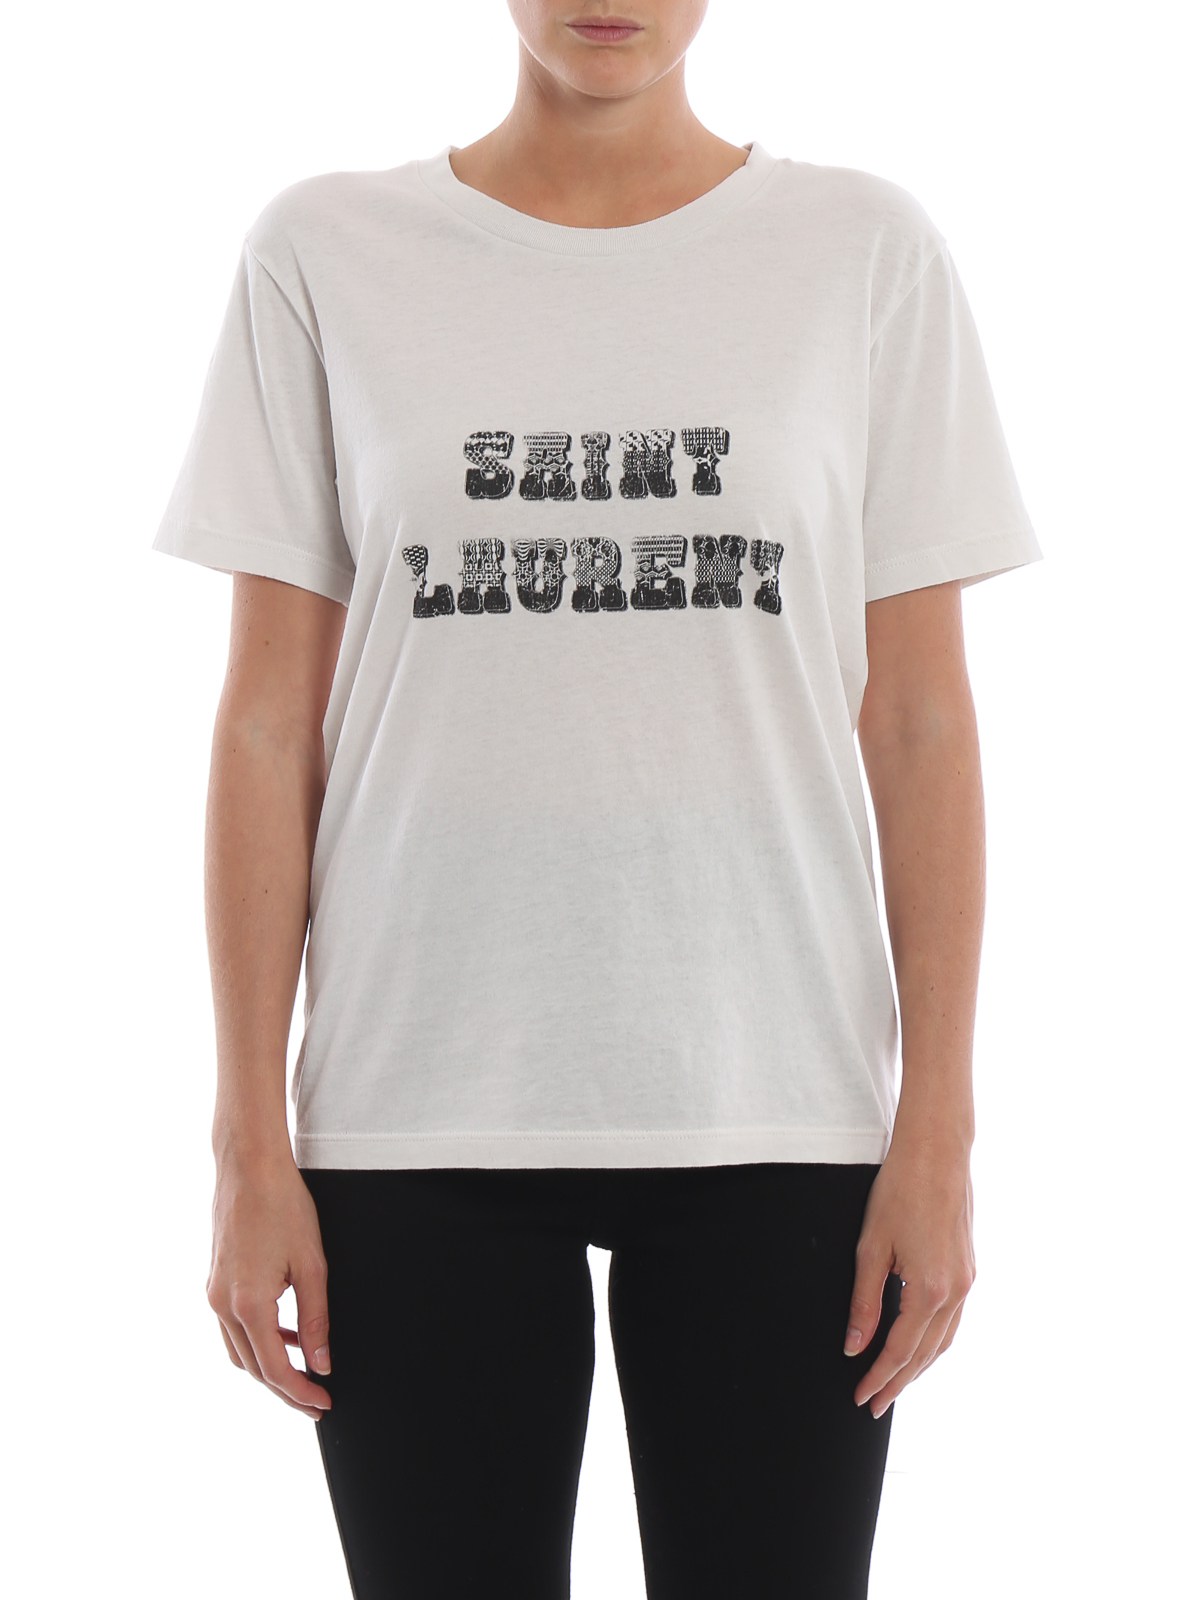 正規品新品☆Saint Laurent☆ロゴコットン半袖Tシャツ☆XL☆ホワイト